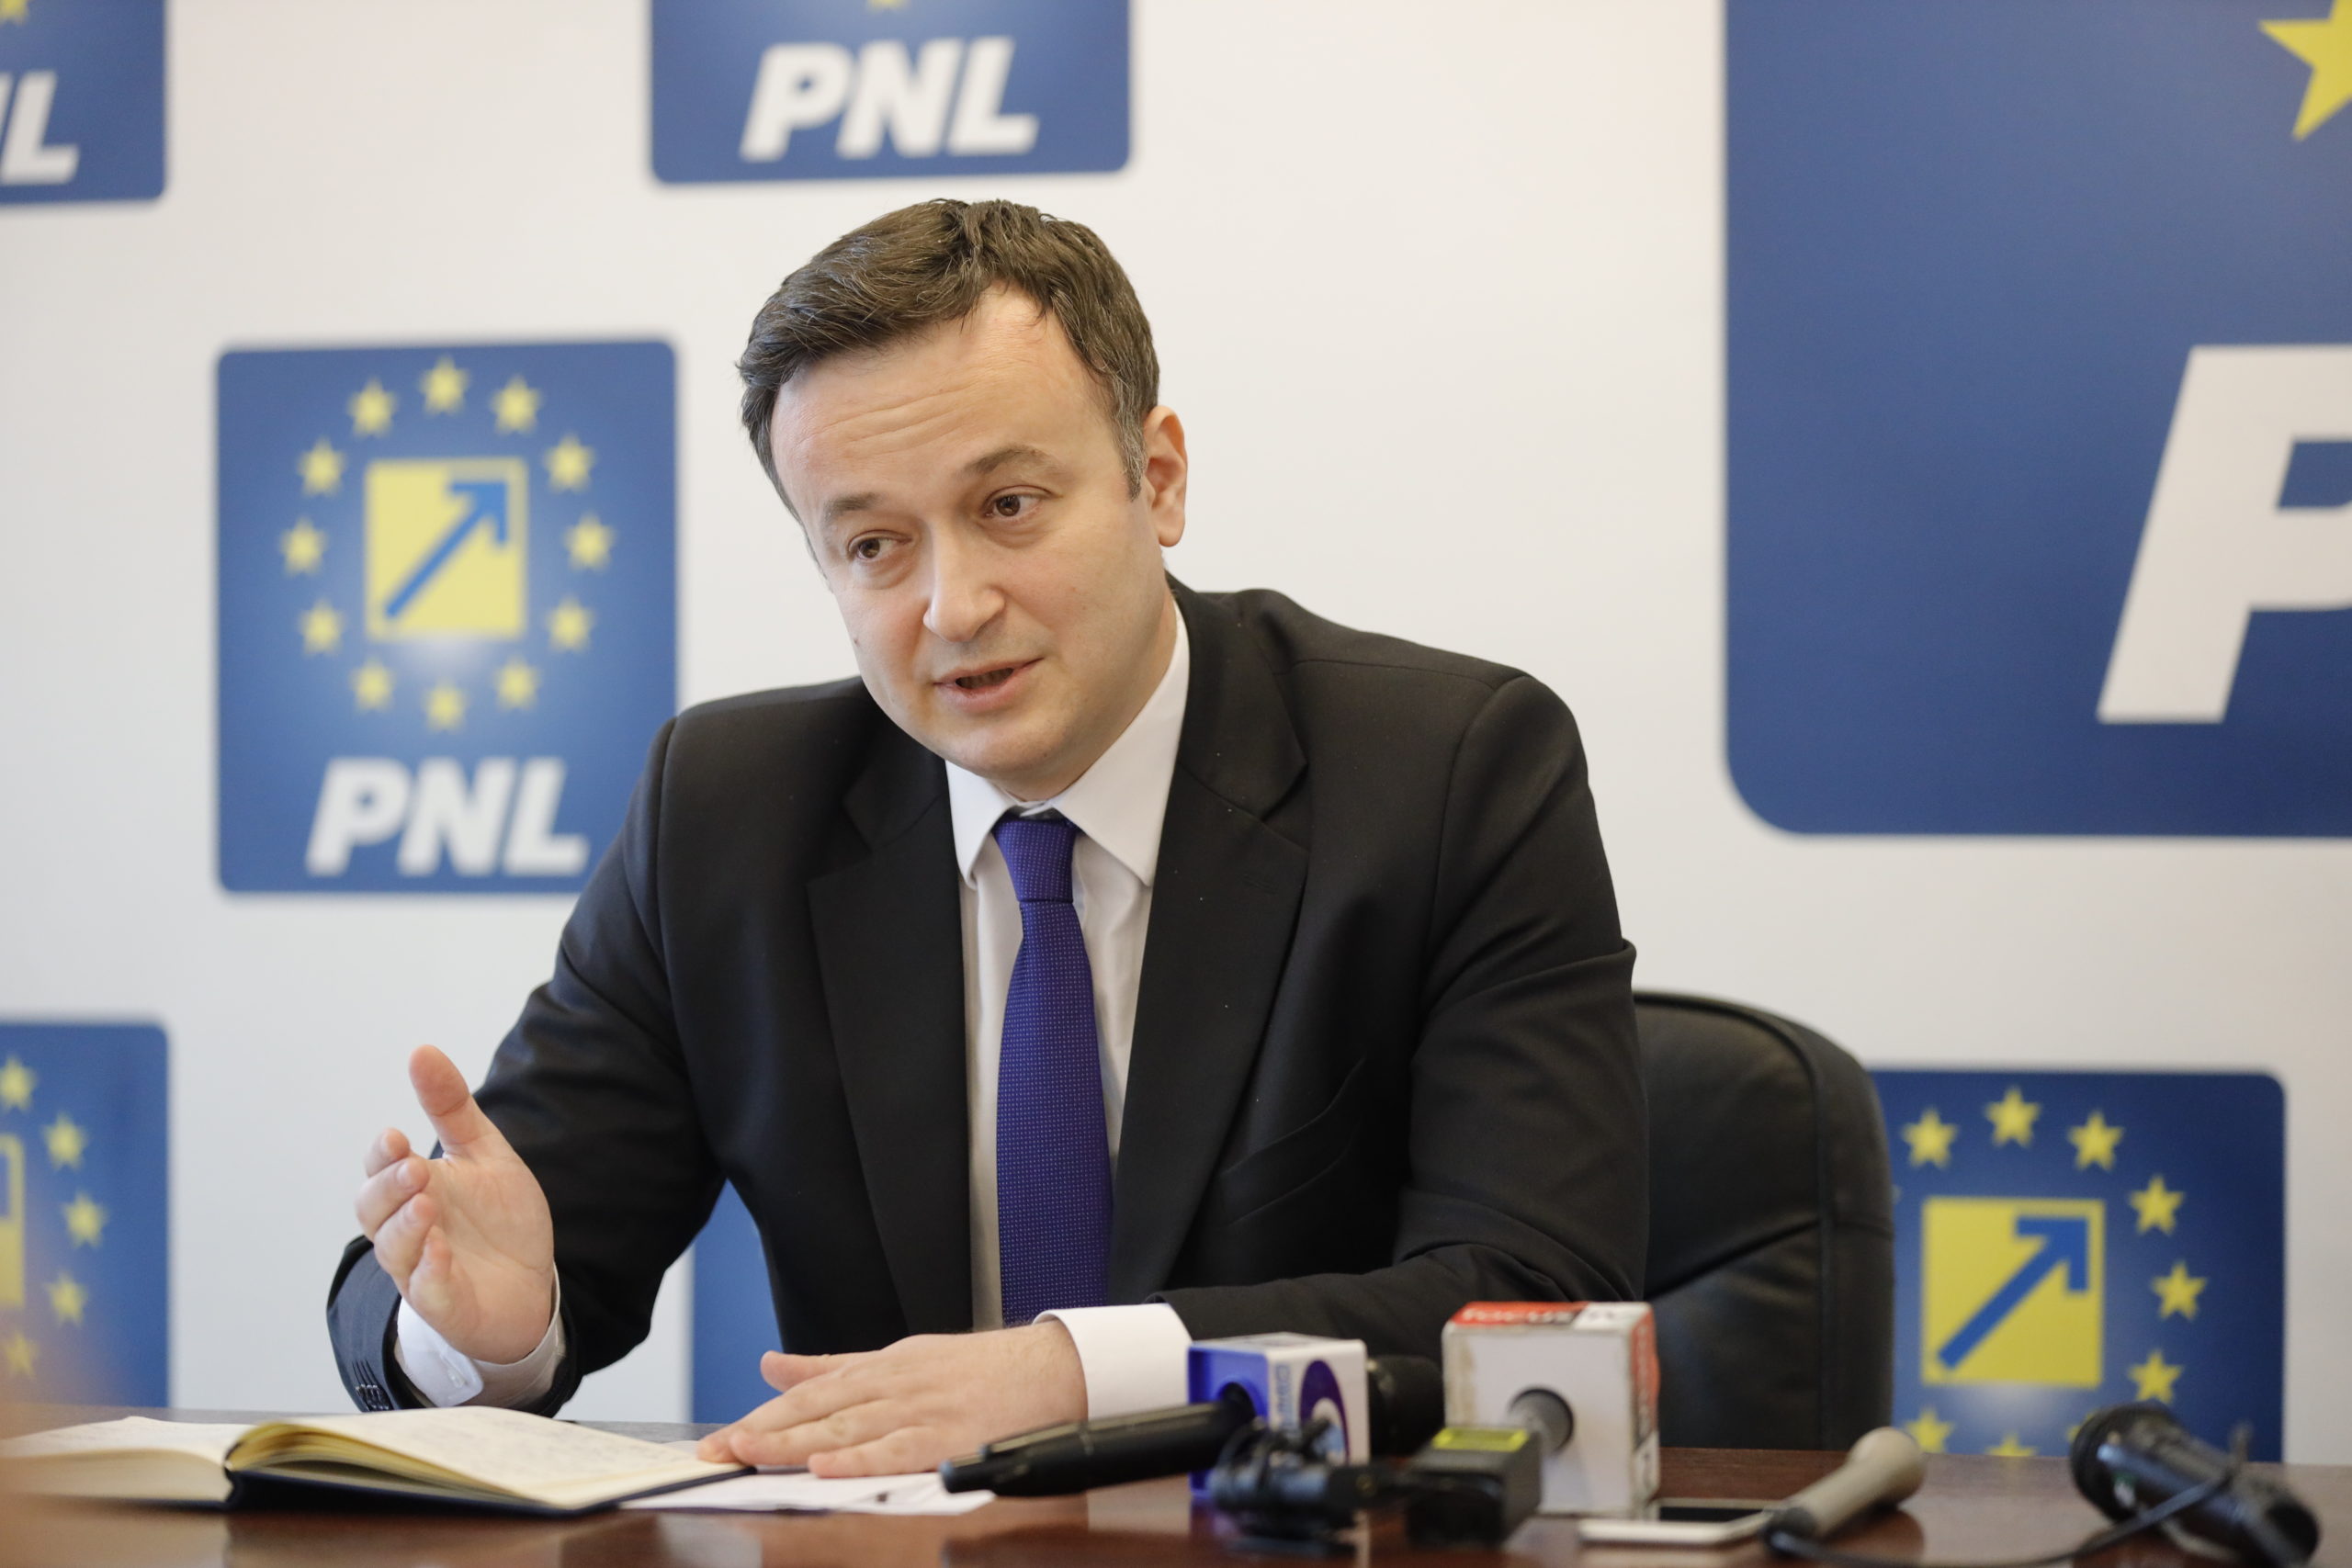 Liderul PNL Buzău, nemulţumit de răspunsul primit în legătură cu ordinul ANPC referitor la meniuri: Răspunsuri evazive şi dileme care, practic, au rămas la fel ca şi până acum